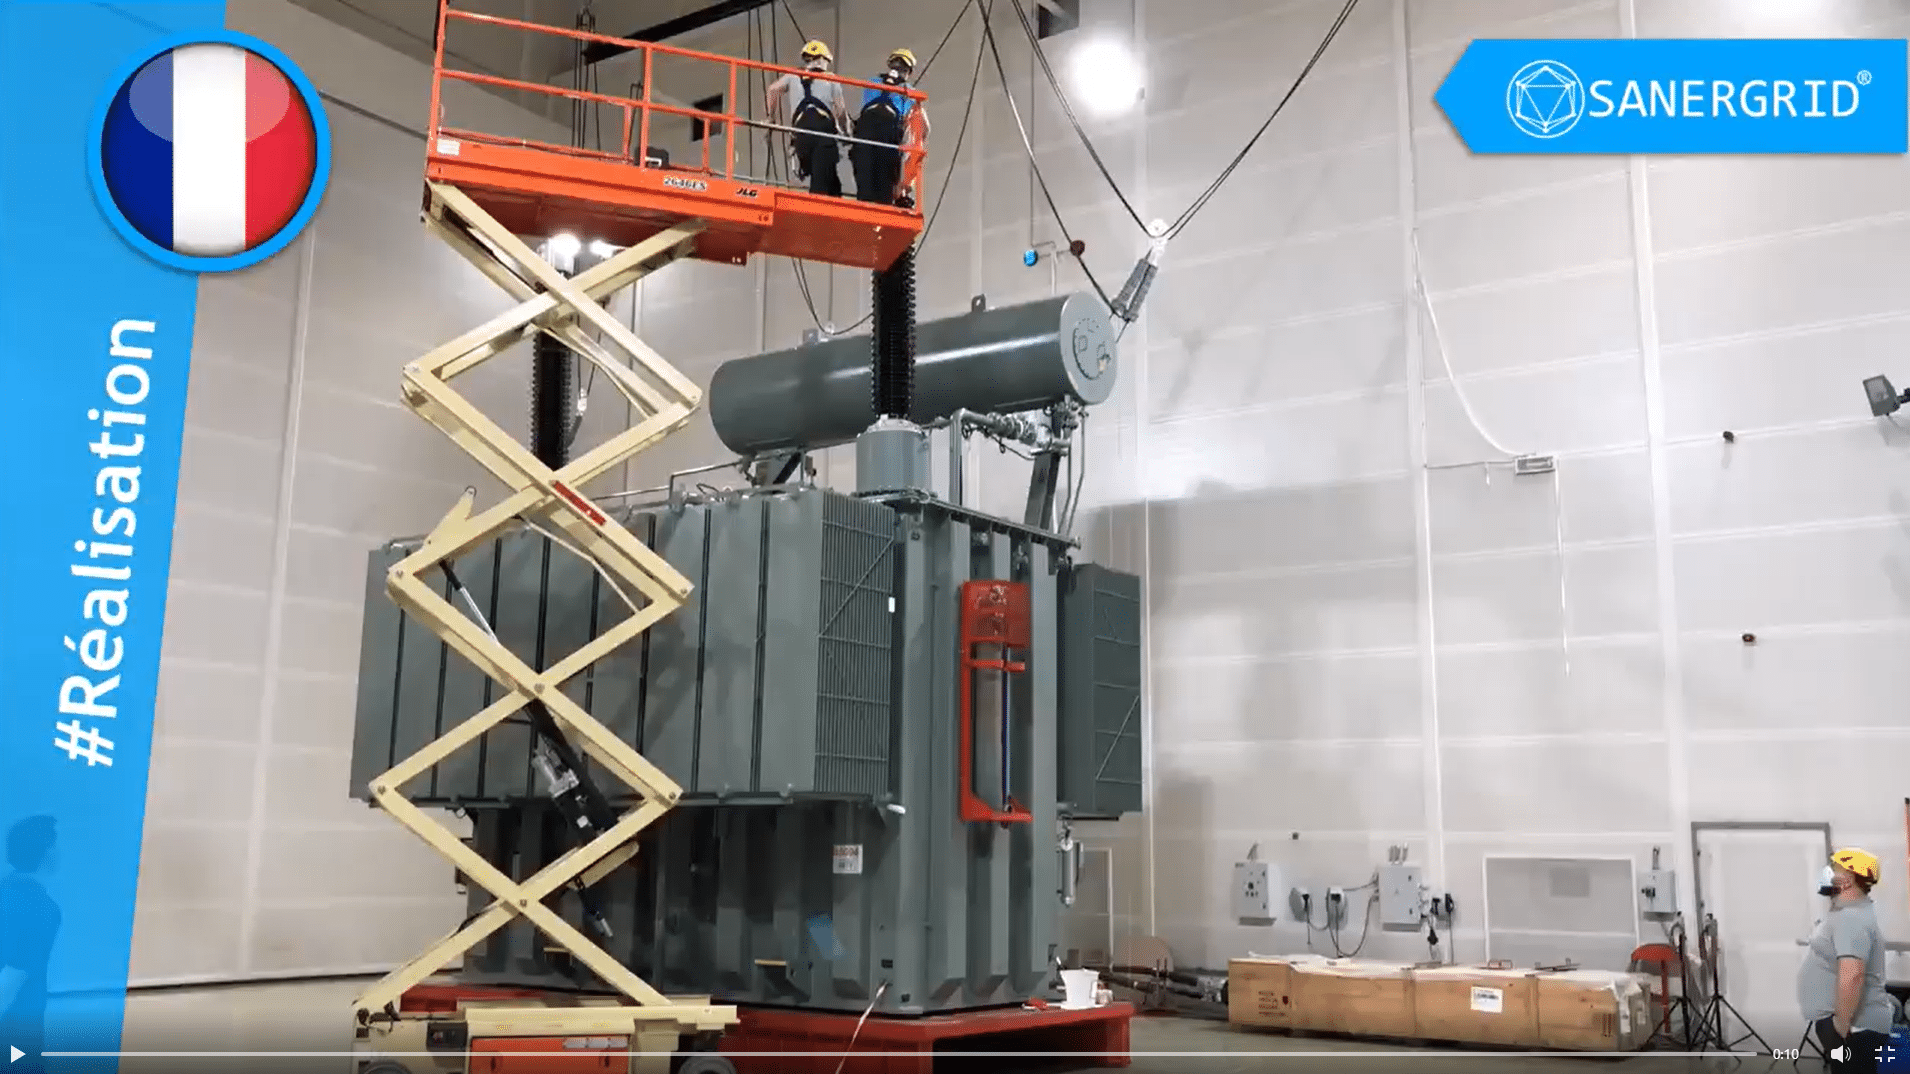 Lo stabilimento SONEC SANERGRID prende in consegna un trasformatore elettrico in olio per la trazione ferroviaria Kolektor ETRA